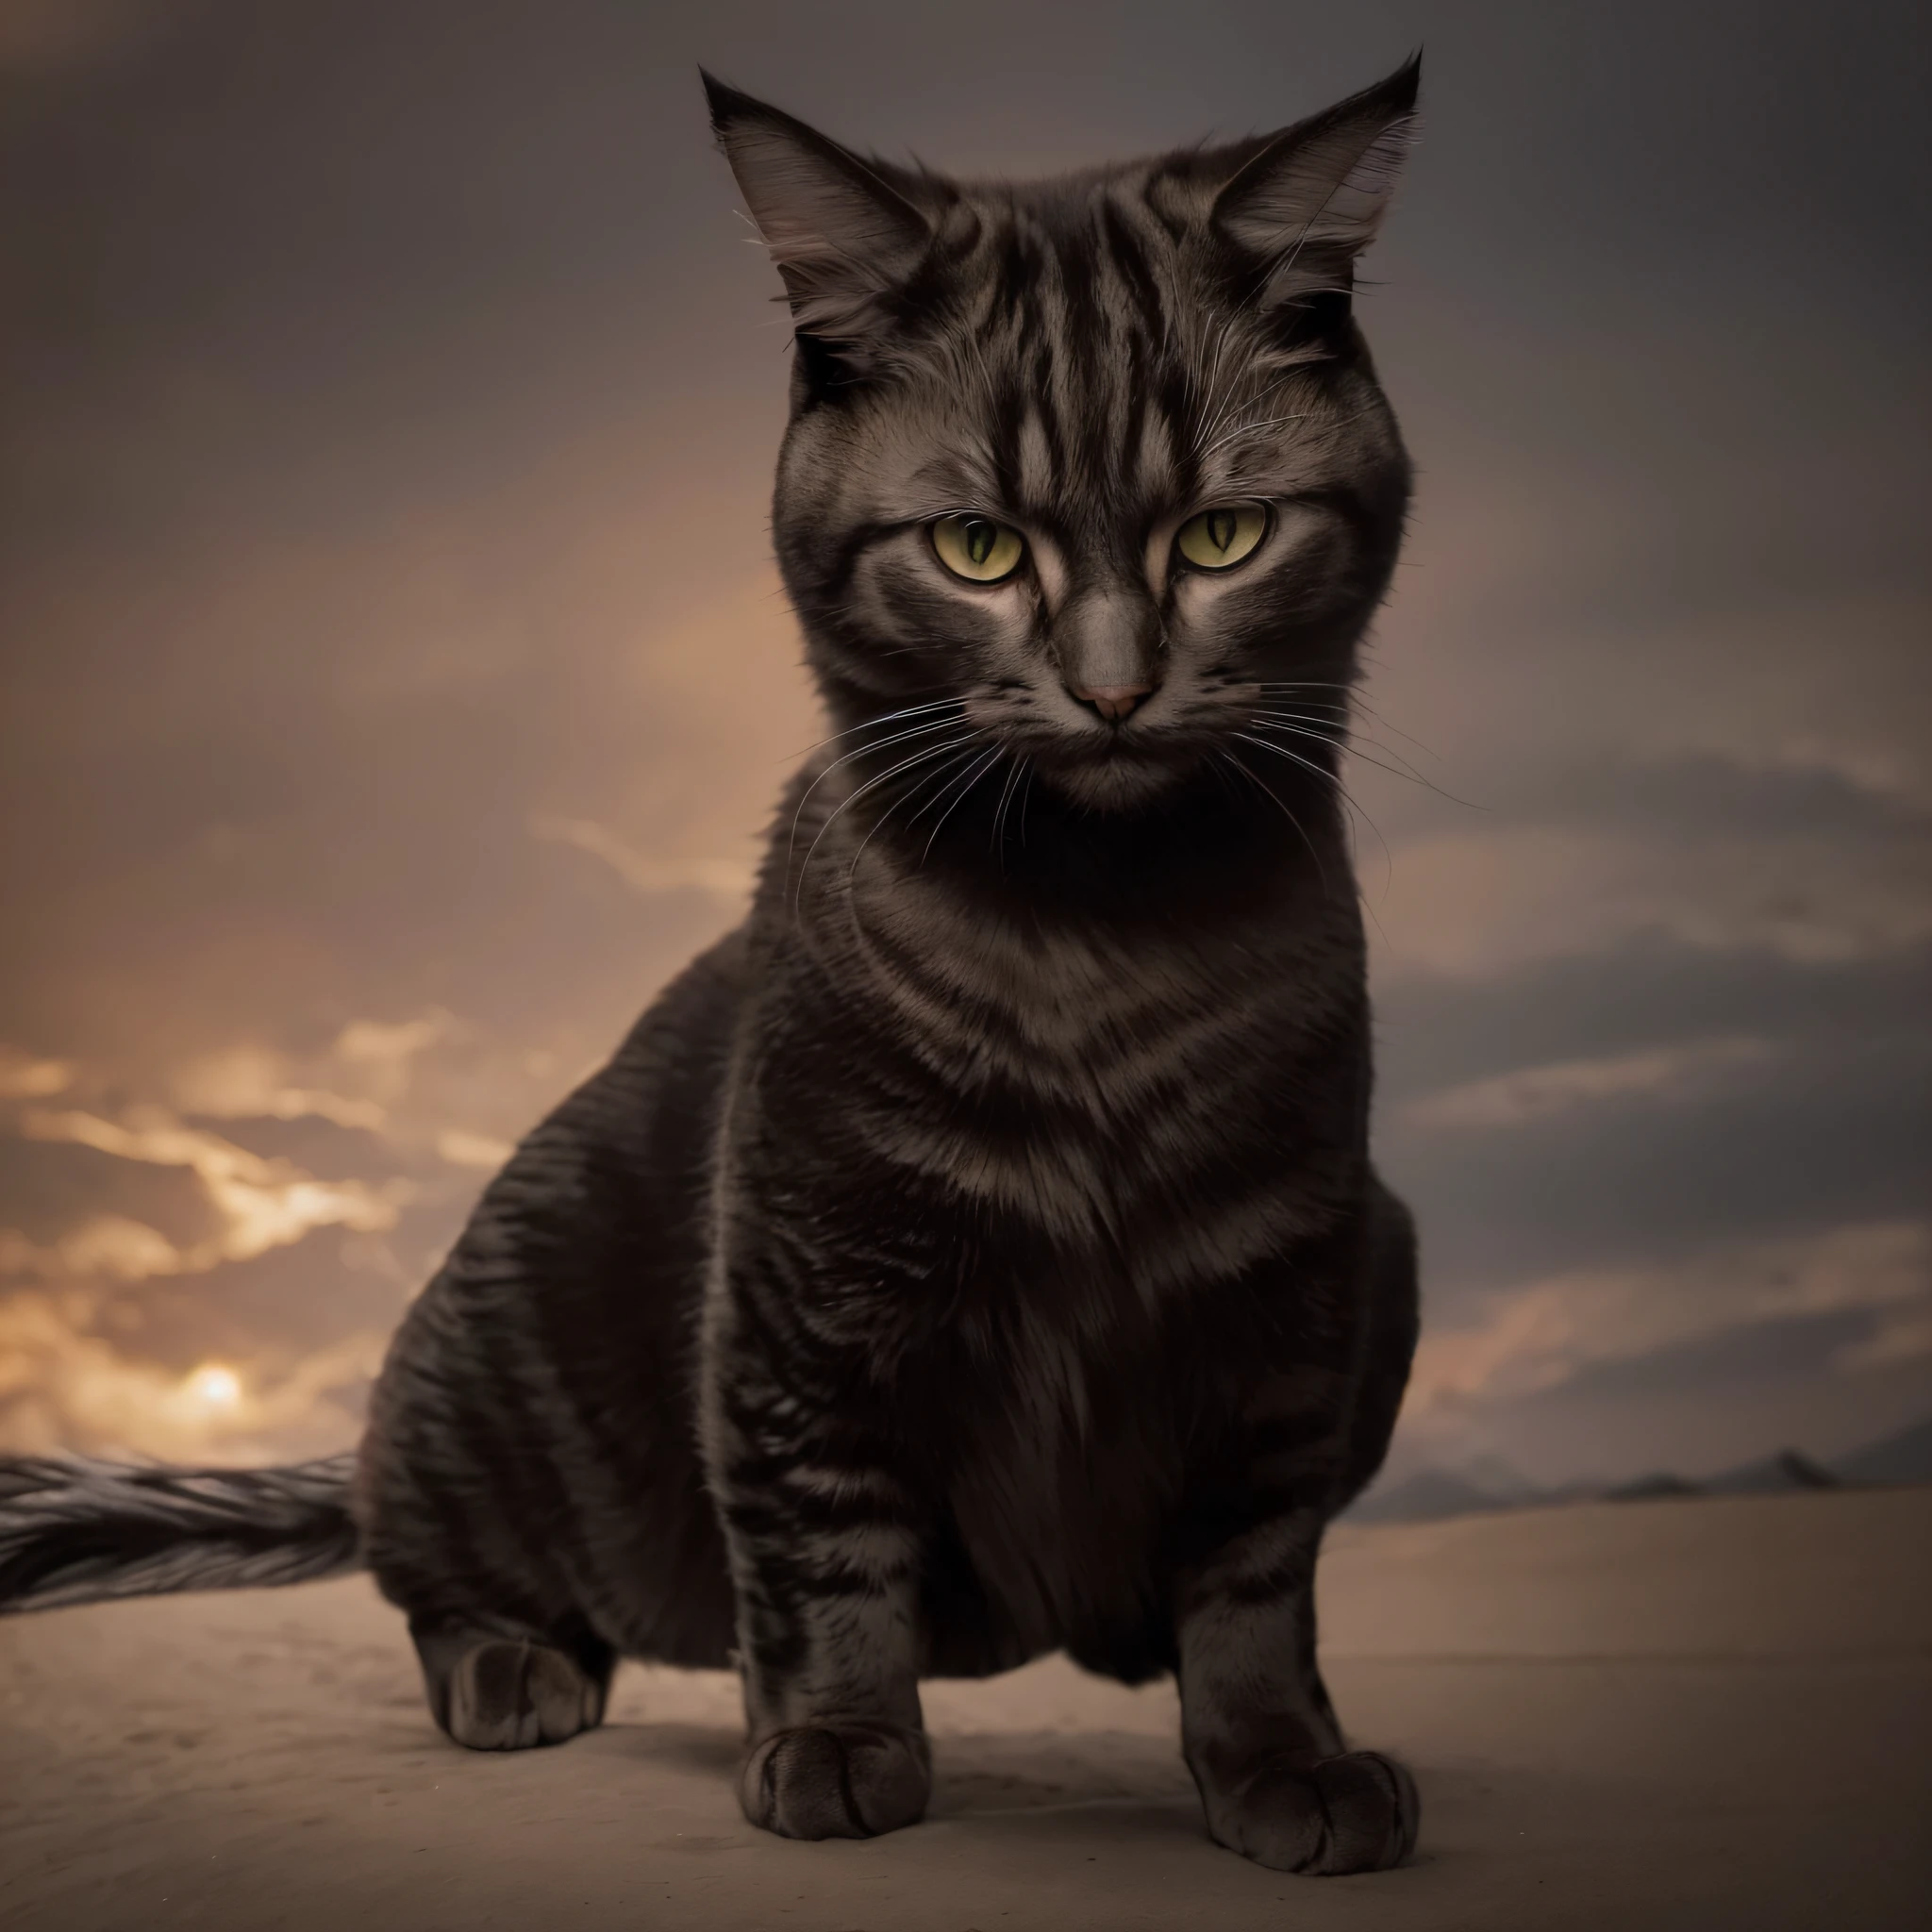 Detaillierte Darstellung einer majestätischen Katze in einer glänzenden  silbernen Rüstung, wobei jedes Element der Rüstung deutlich sichtbar ist,  vor einem dunklen Hintergrund, dramatischer Hintergrund, der die königliche  und imposante Präsenz der Katze